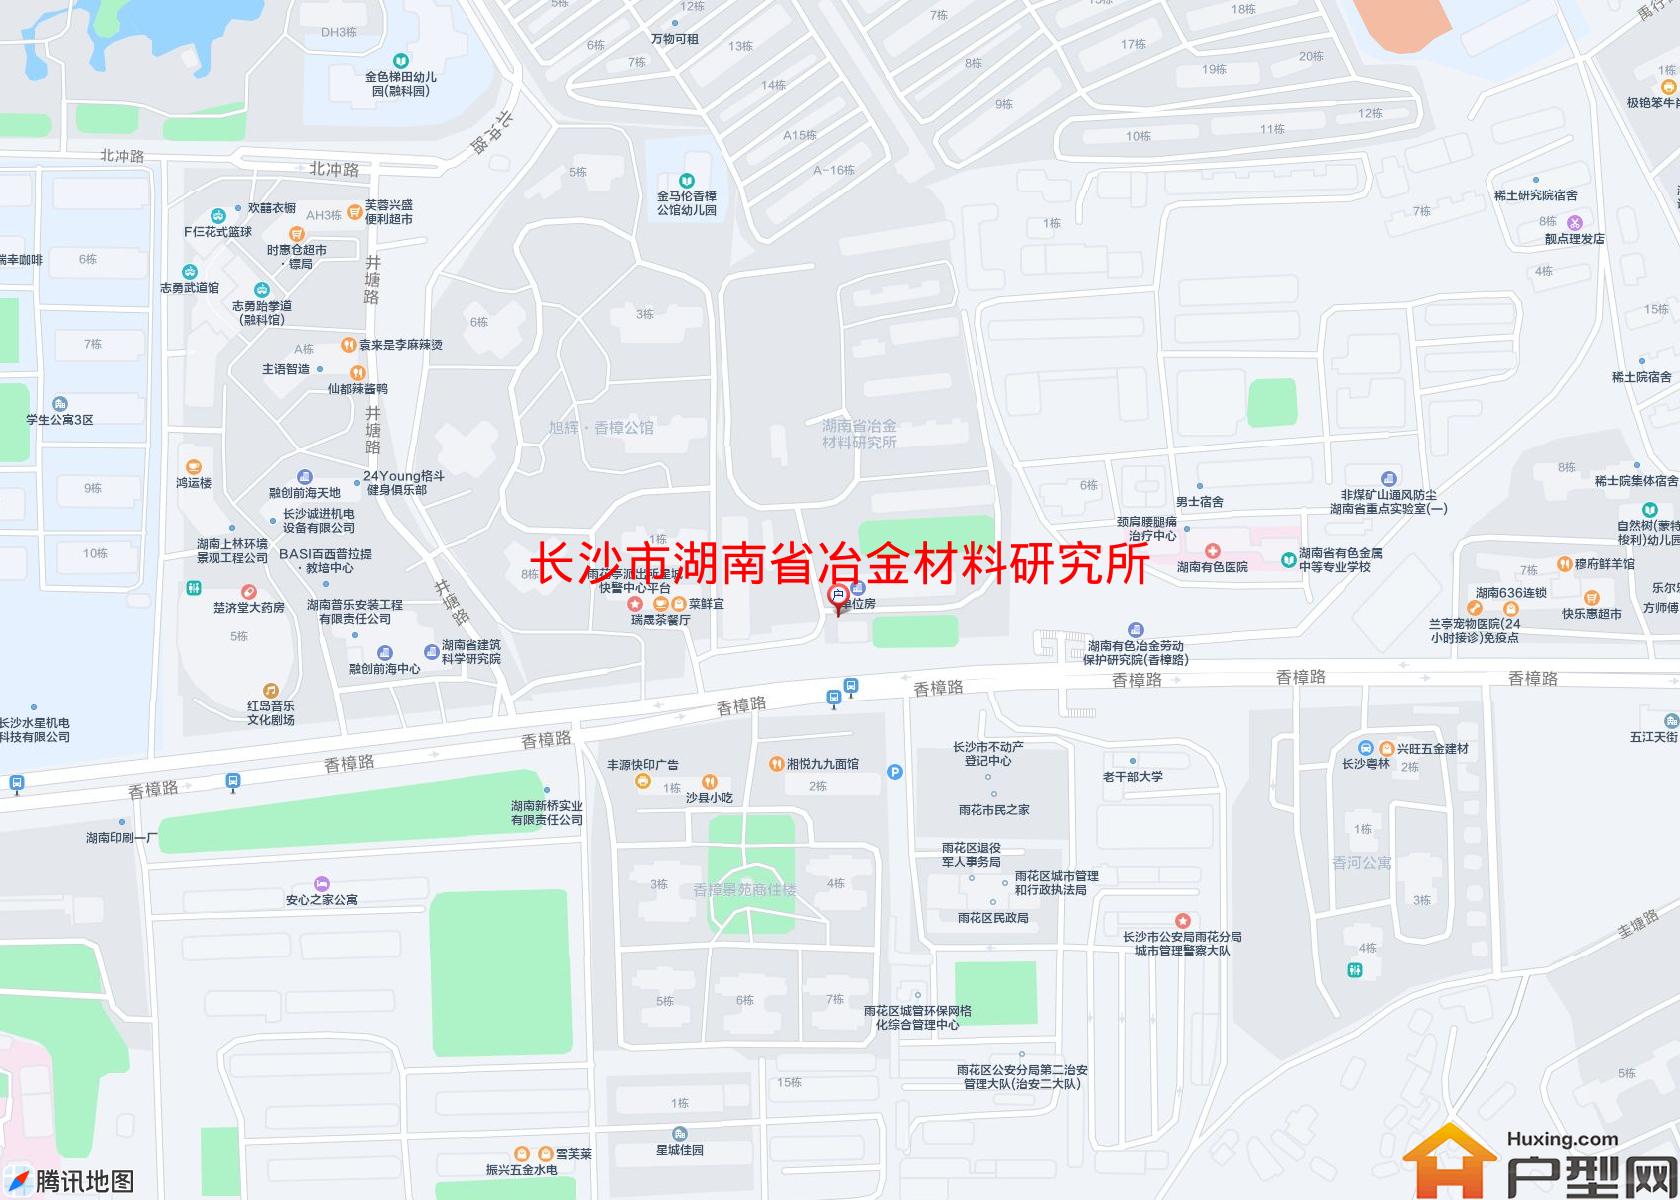 湖南省冶金材料研究所宿舍小区 - 户型网